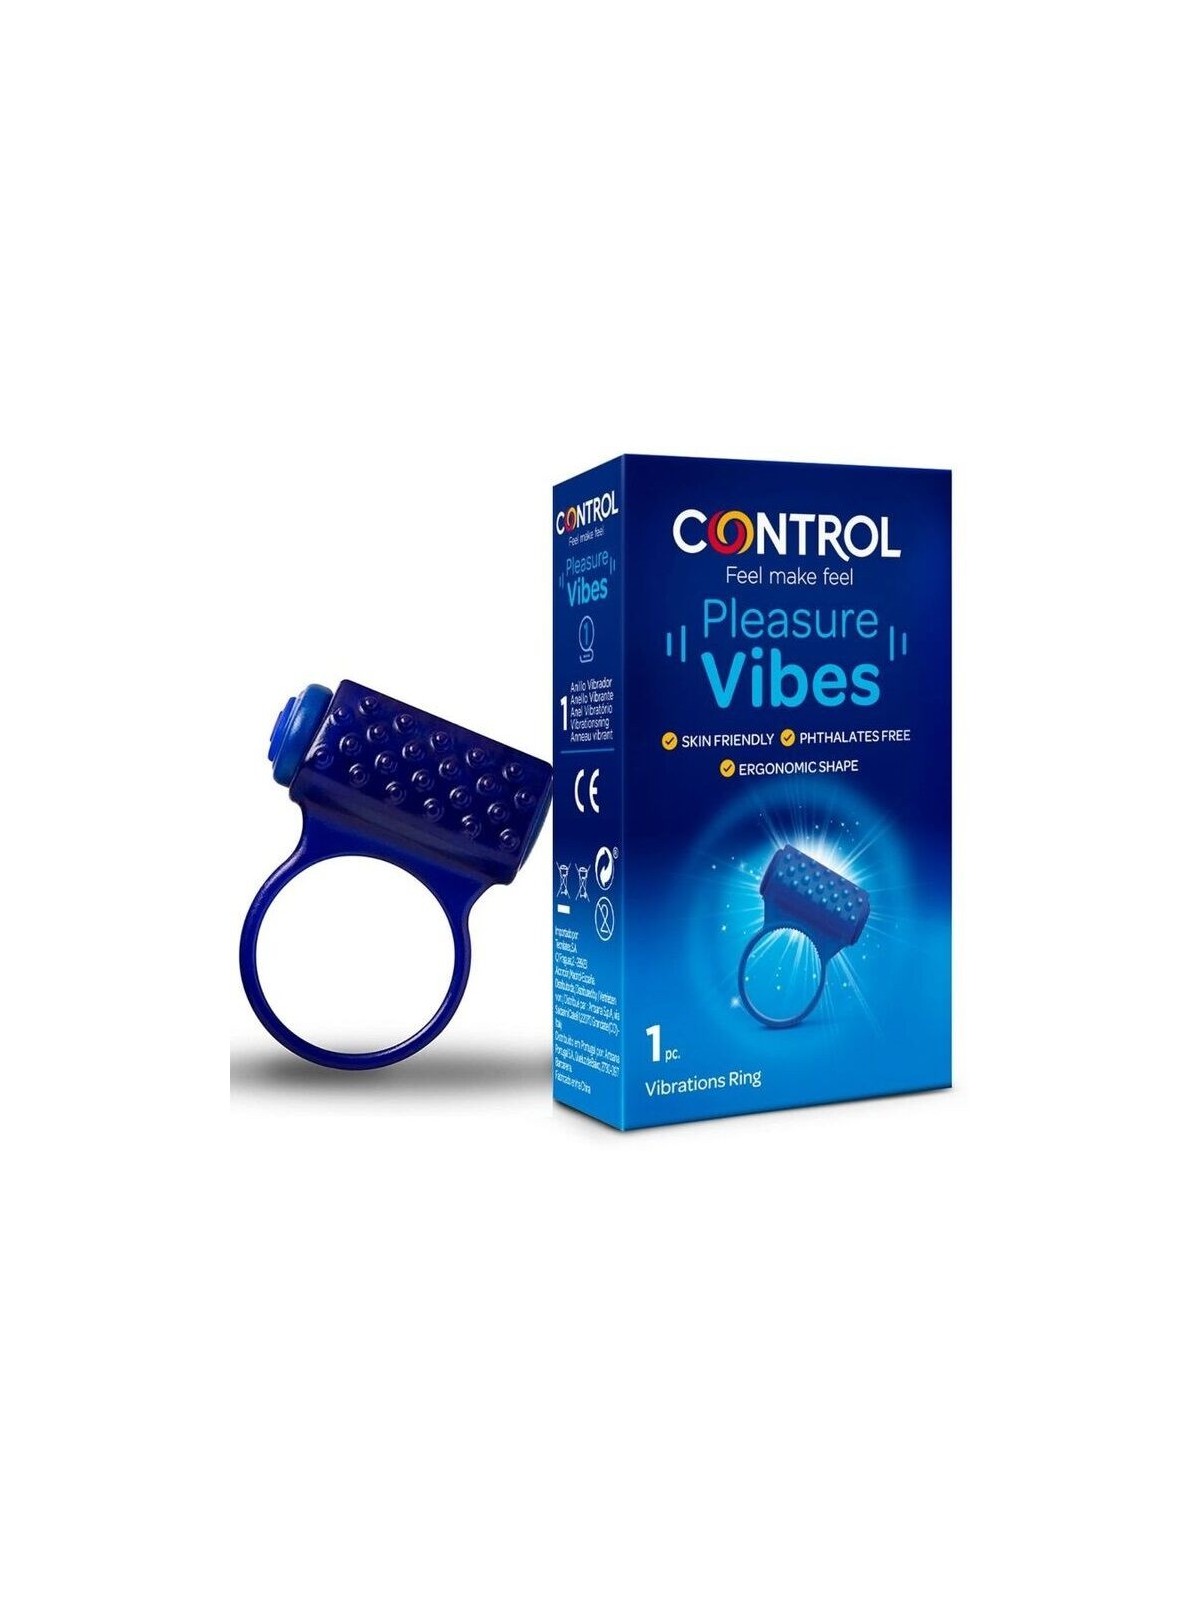 Control Pleasure Vibes Anillo Vibrador - Comprar Anillo vibrador pene Control - Anillos vibradores pene (1)